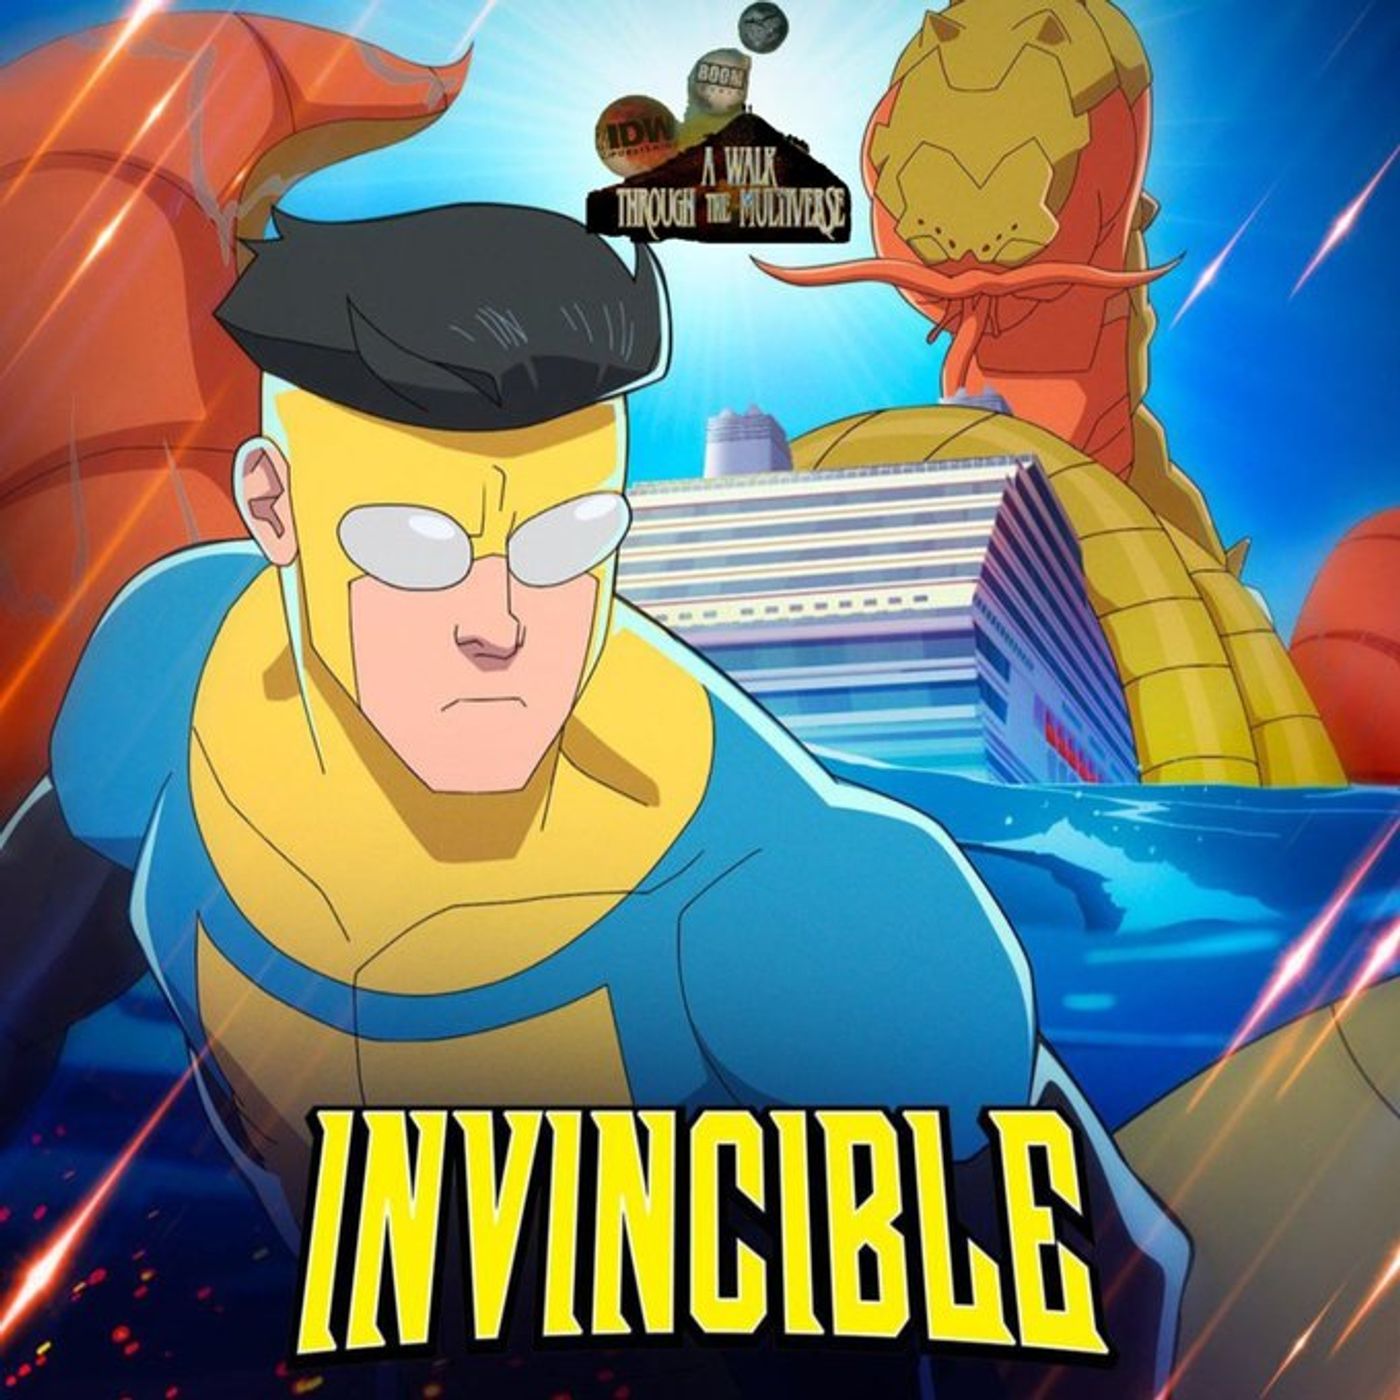 Invincible Season 2 Episode 7 Review - A Walk Through The Multiverse Episode 91